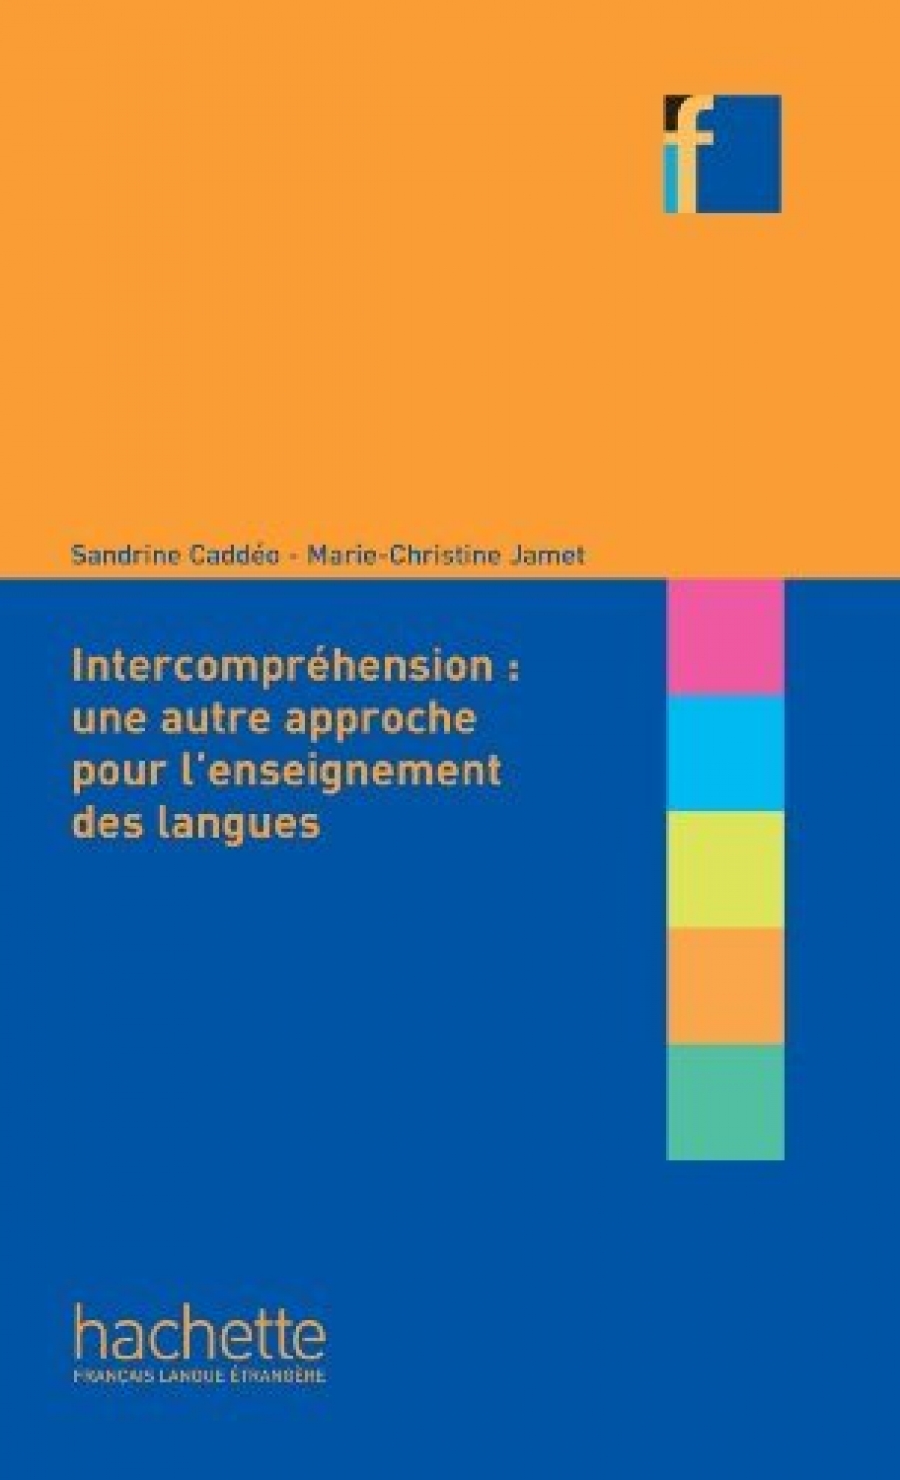 Caddeo, S., Jamet, M-C. L'intercomprehension : une autre approche pour l'enseignant des langues 